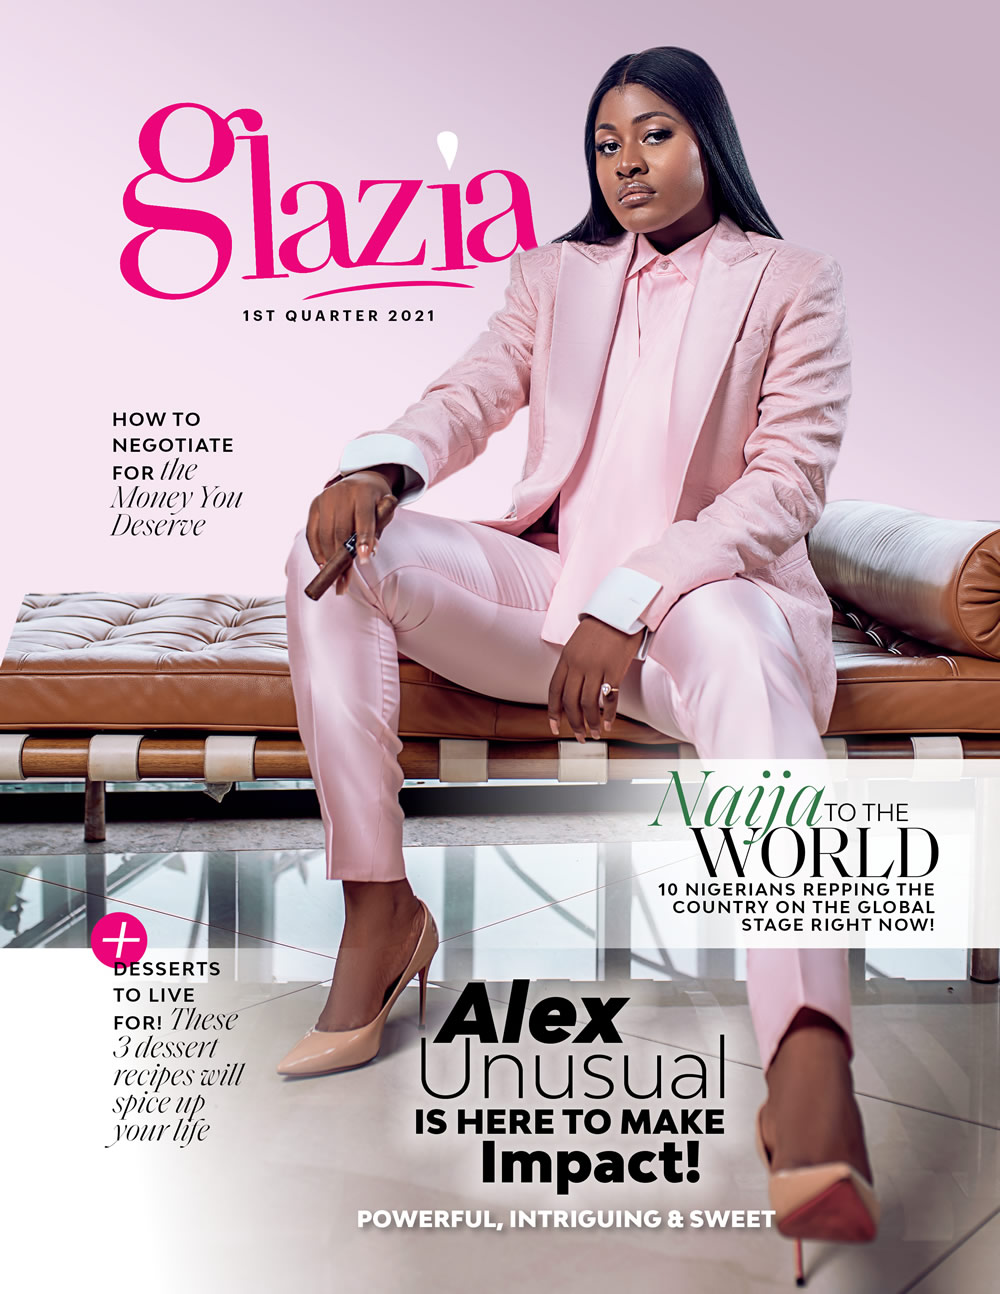 Glazia Magazine 1st Quarter 2021